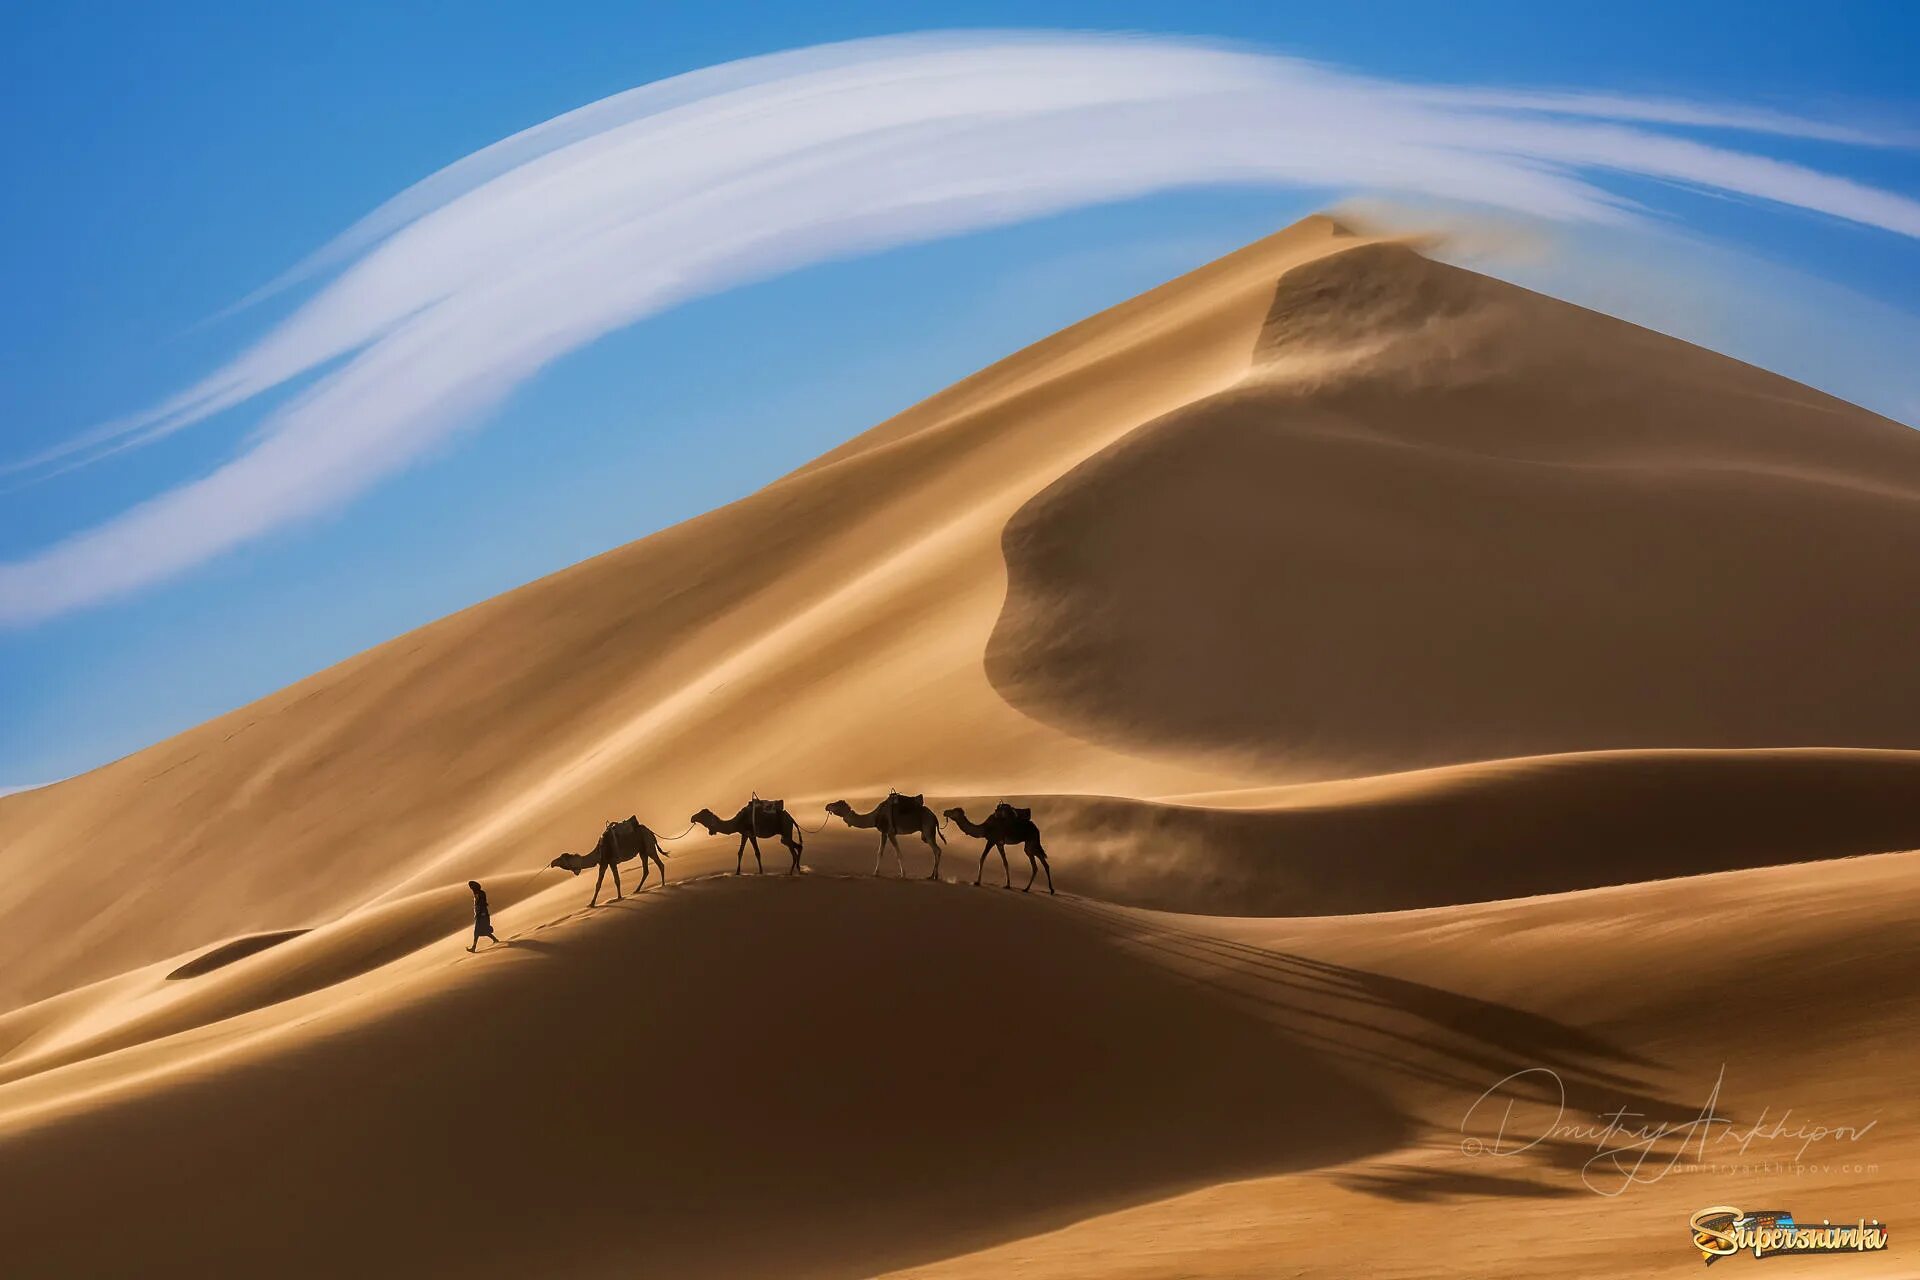 Фототур в Марокко. Пейзаж пустыни Кызылкум. Верблюд в пустыне.